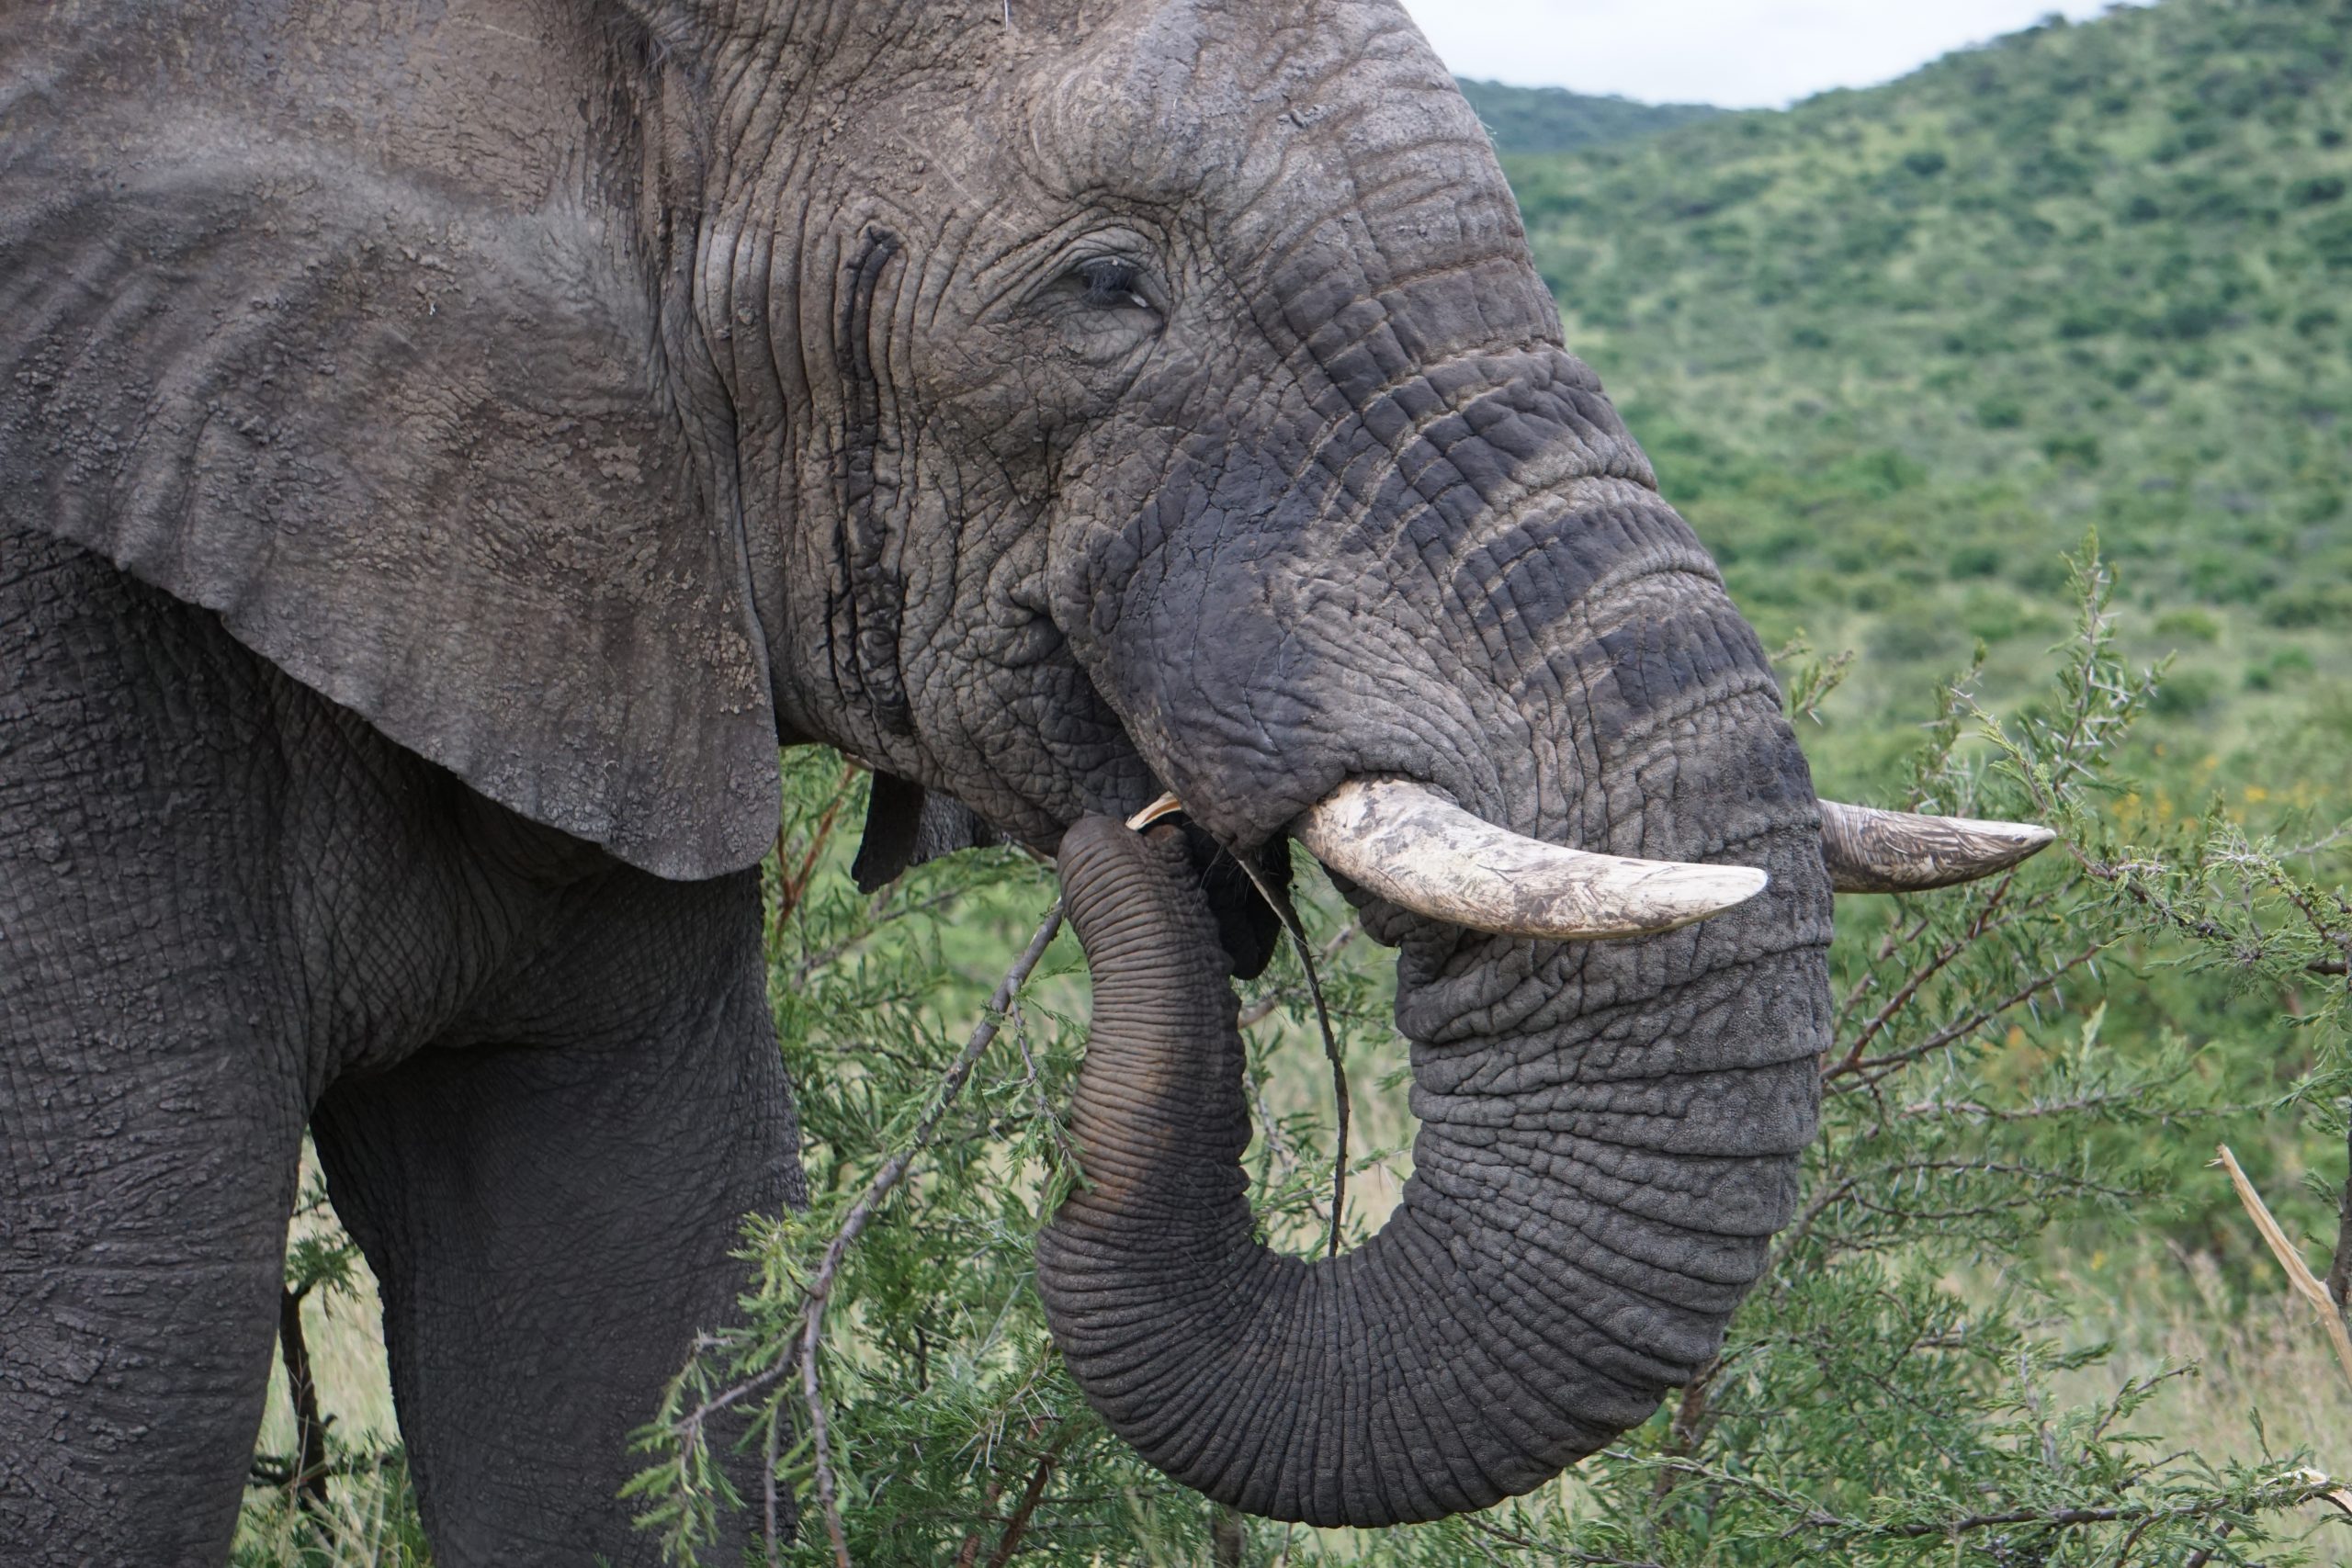 Elephant, Hluhluwe National Park, Kwa-Zulu Natal, South Africa